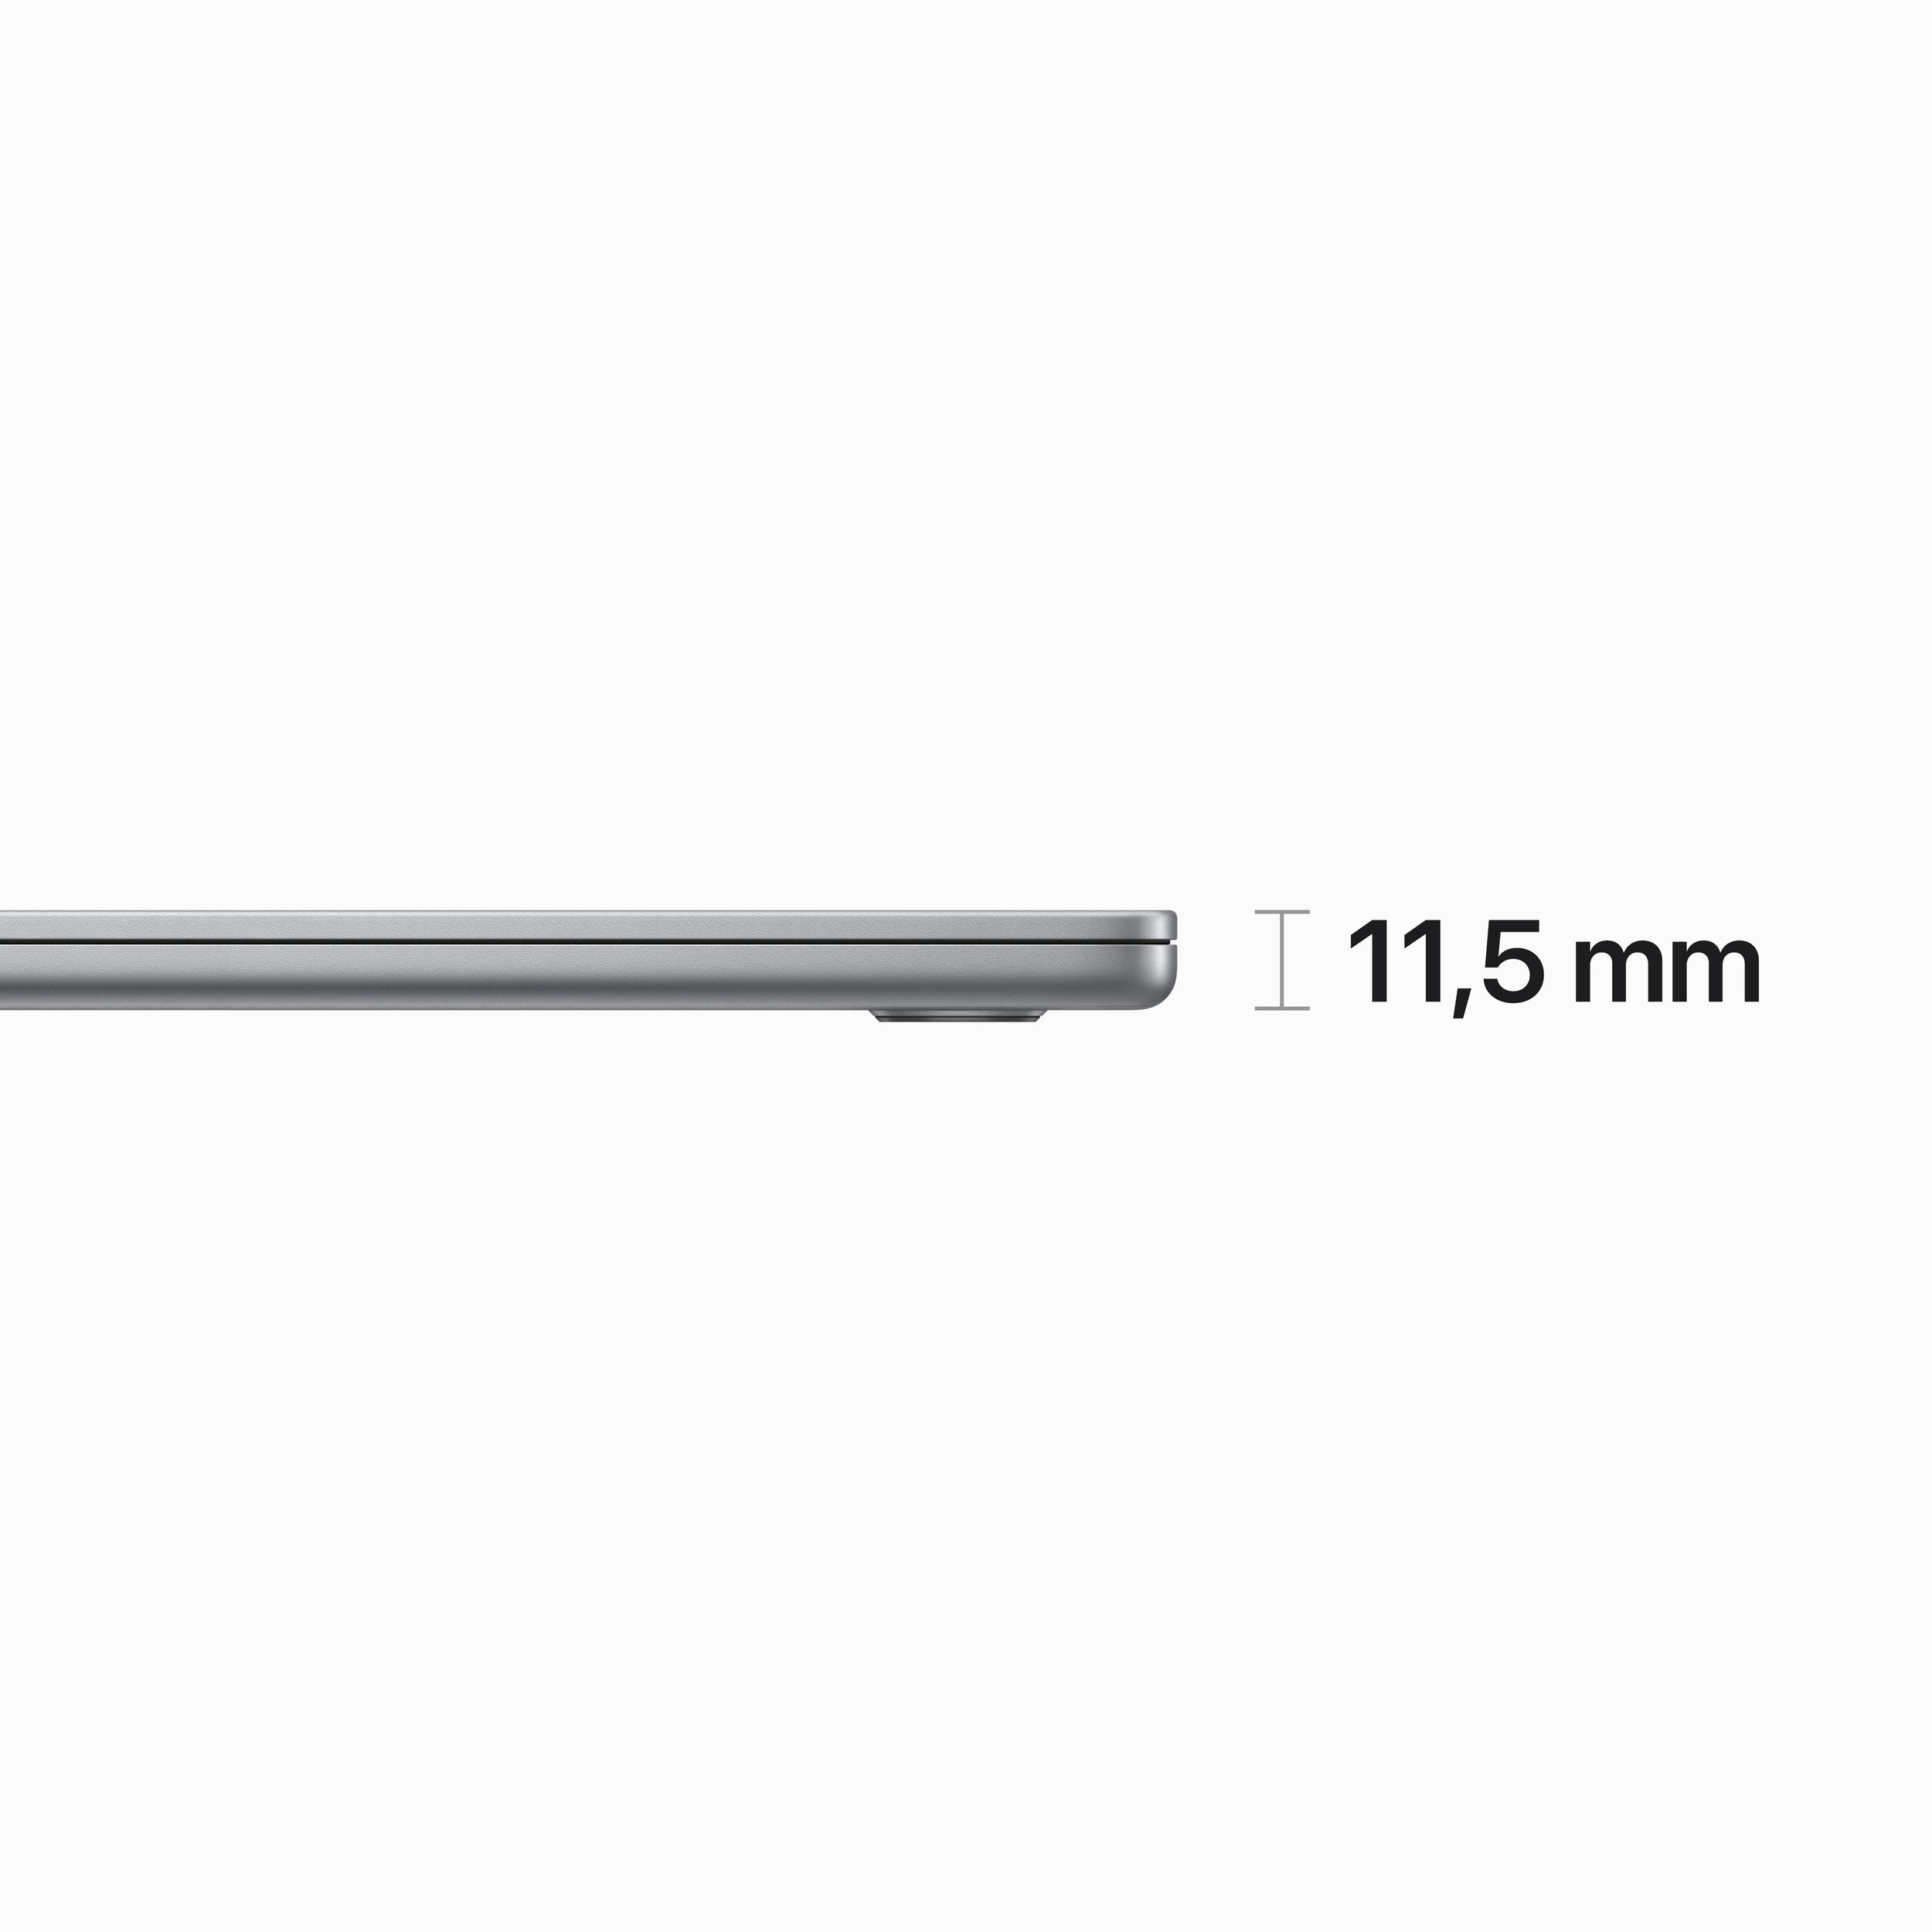 Macbook Apple Mqkp3E/A Air 15 Pulgadas Chip M2 8N Cpu 10N Gpu 256Gb Ssd 8Gb Ram Gris Espacial